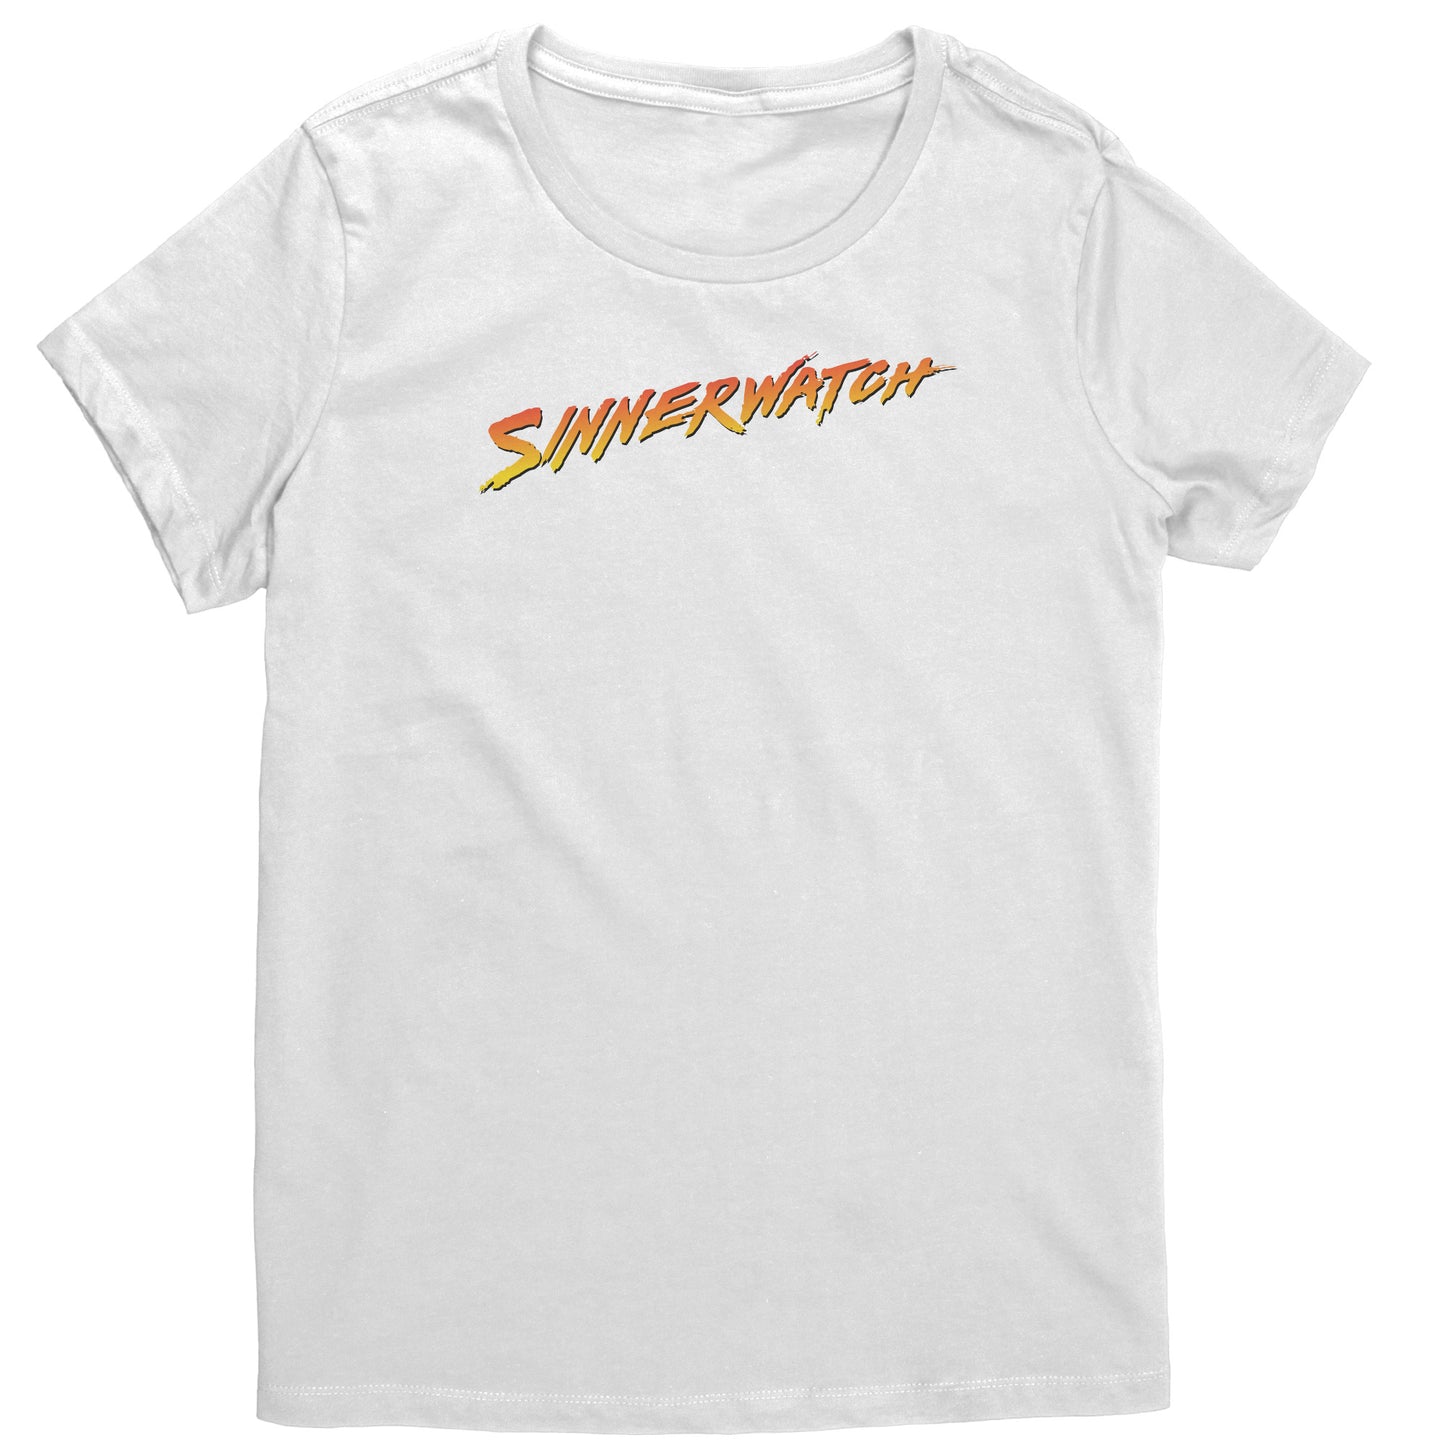 Sinnerwatch Women's T-Shirt